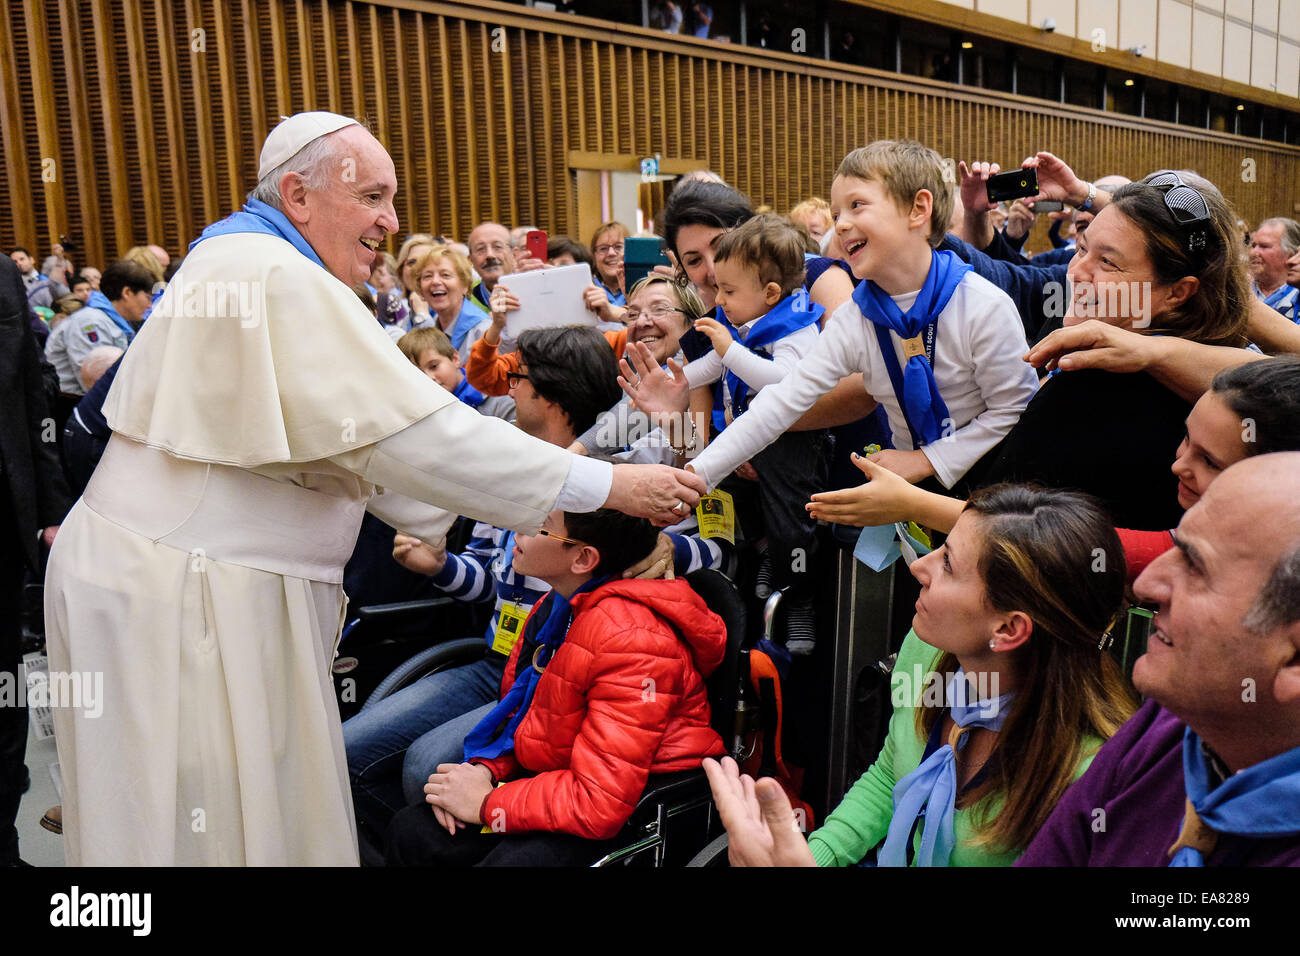 Aula Paolo VI, Vatikanstadt. 8. November 2014. Papst Francis Besprechungstermin mit der Bewegung der Italiener Erwachsene Scout Credit: wirklich Easy Star/Alamy Live News Stockfoto